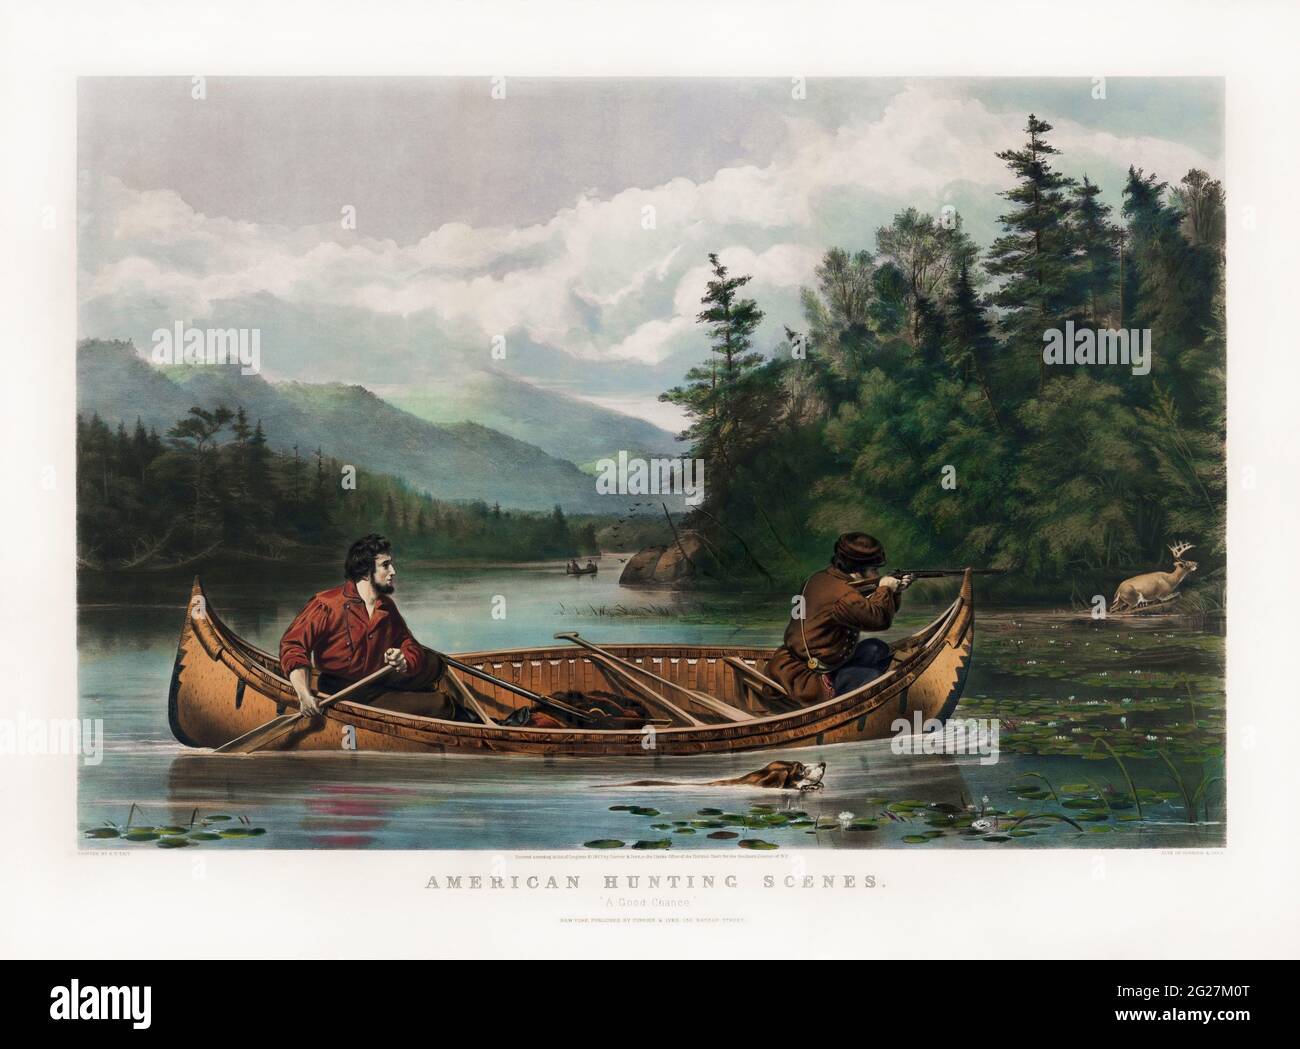 Zwei Jäger im Kanu, einer paddelt und der andere schießt sein Gewehr auf einen Elch am Ufer. Stockfoto